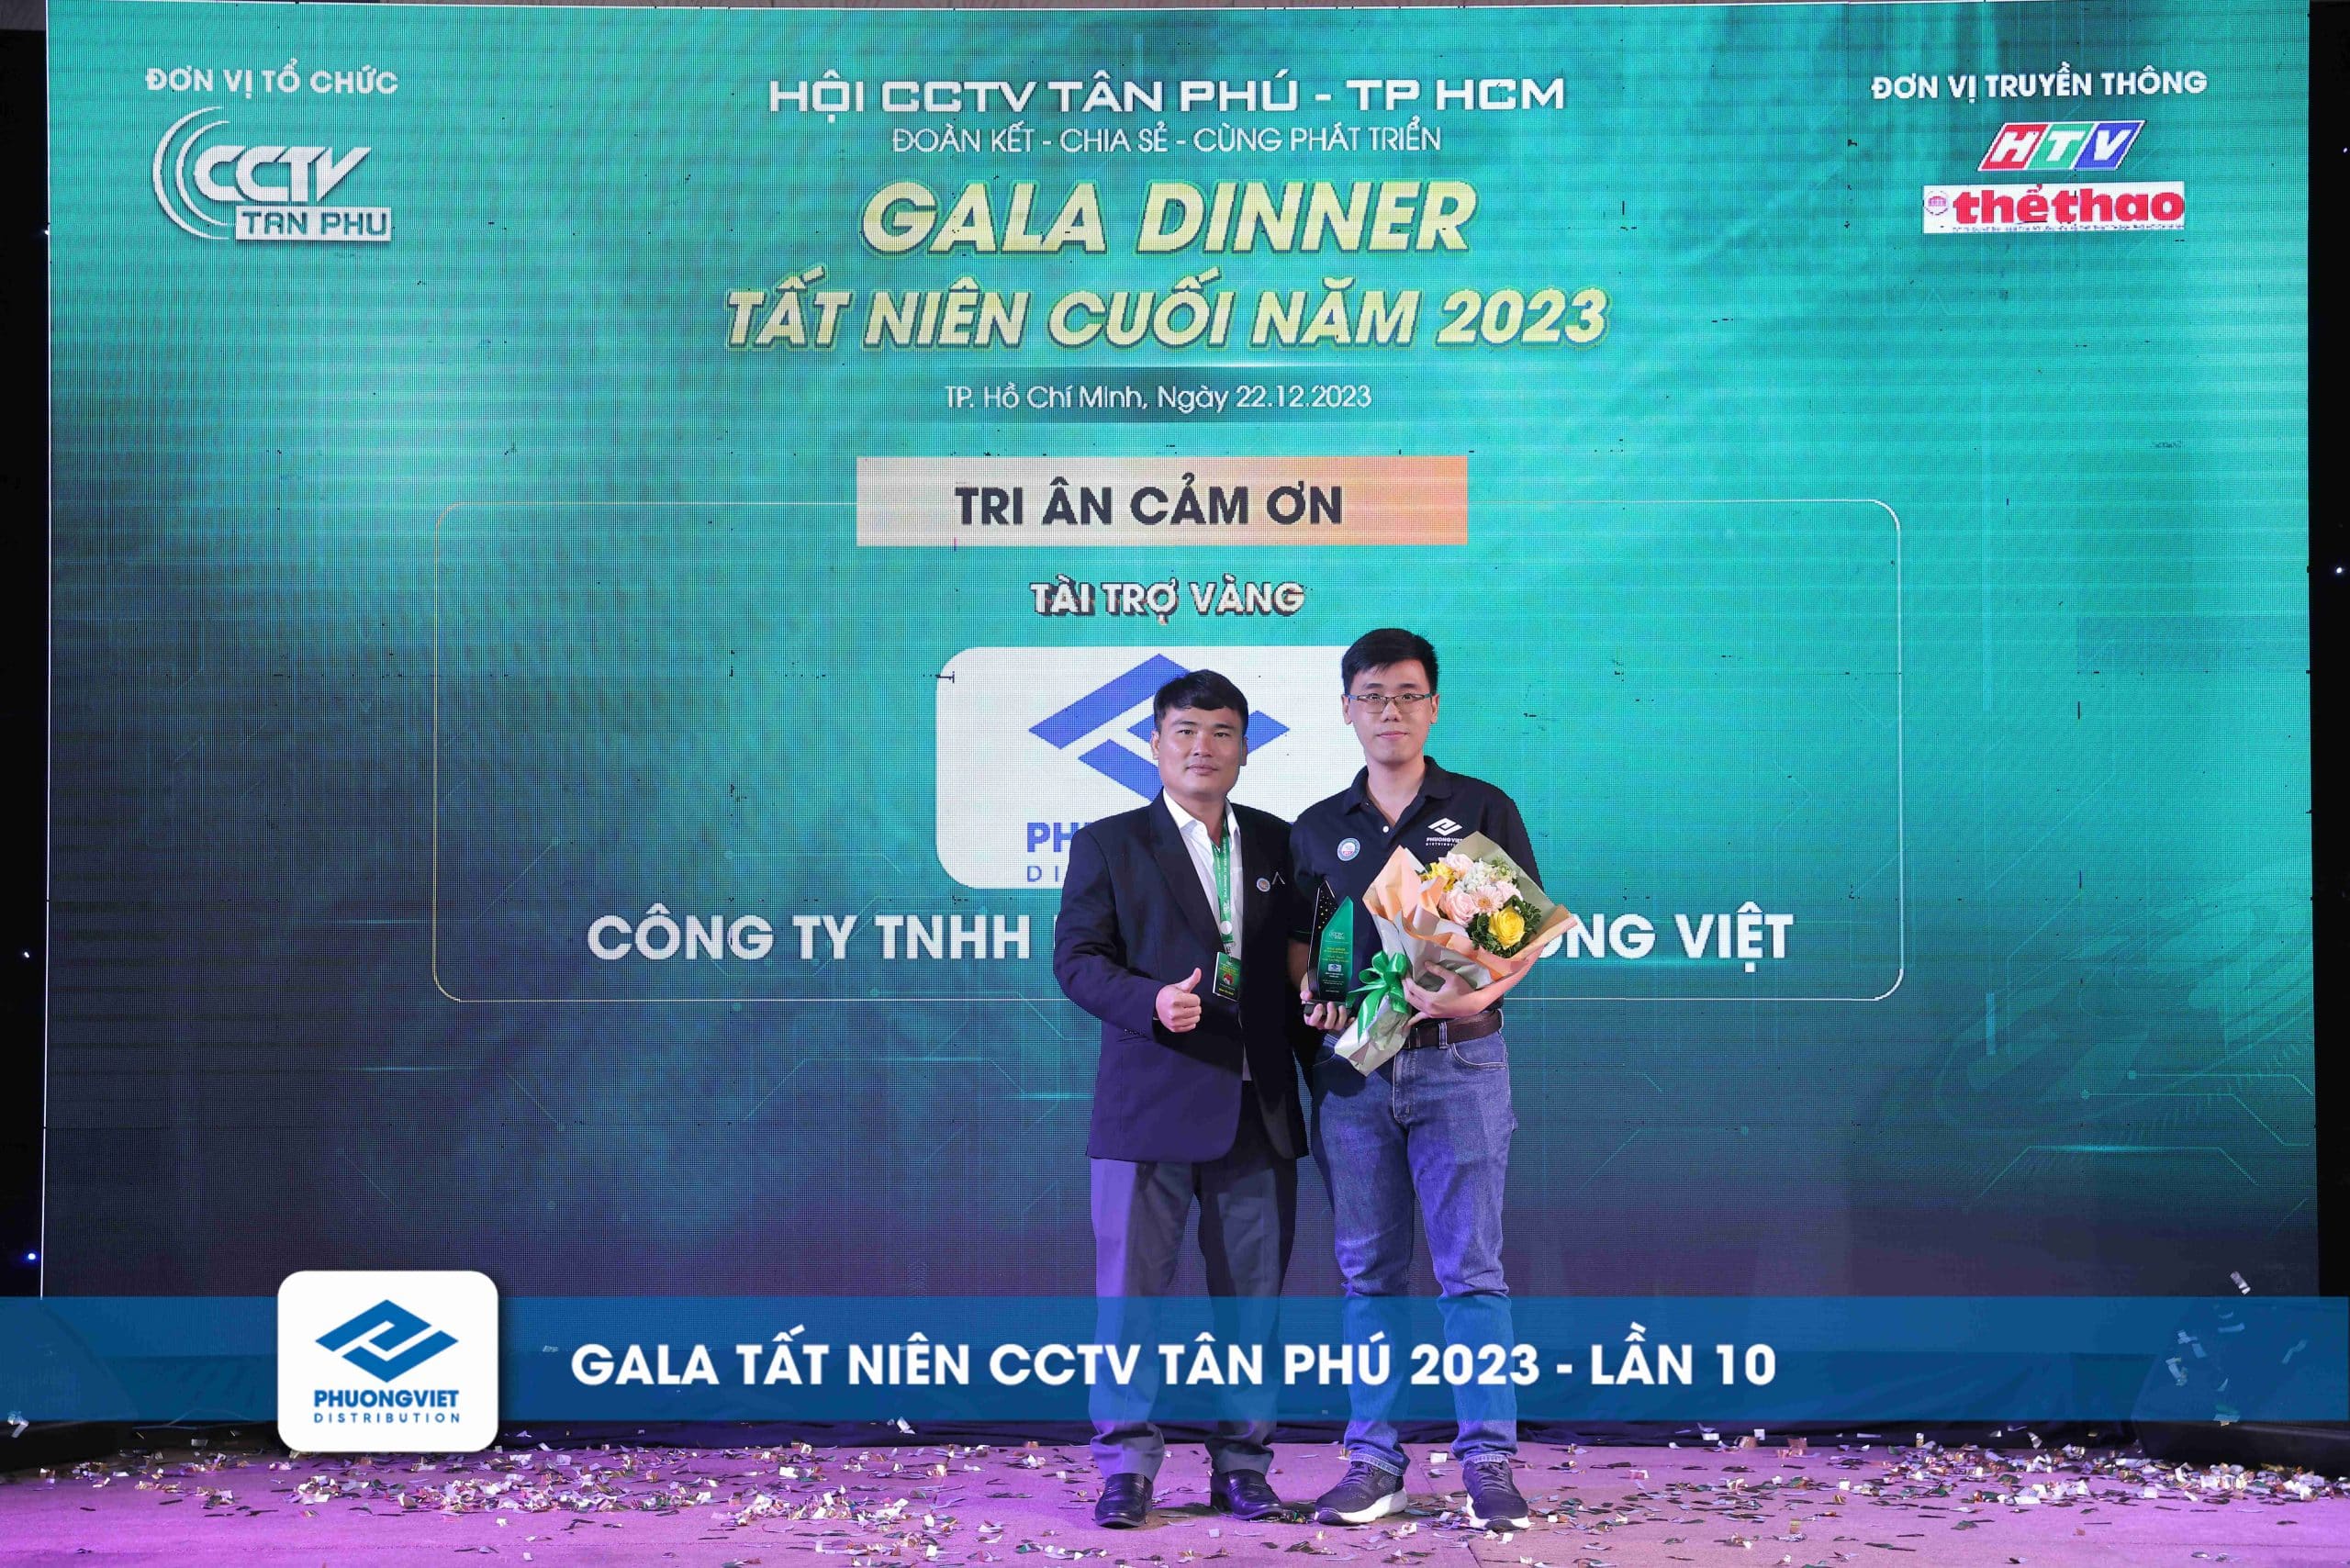 Đại diện công ty Phương Việt nhận hoa và kỷ niệm chương từ BTC